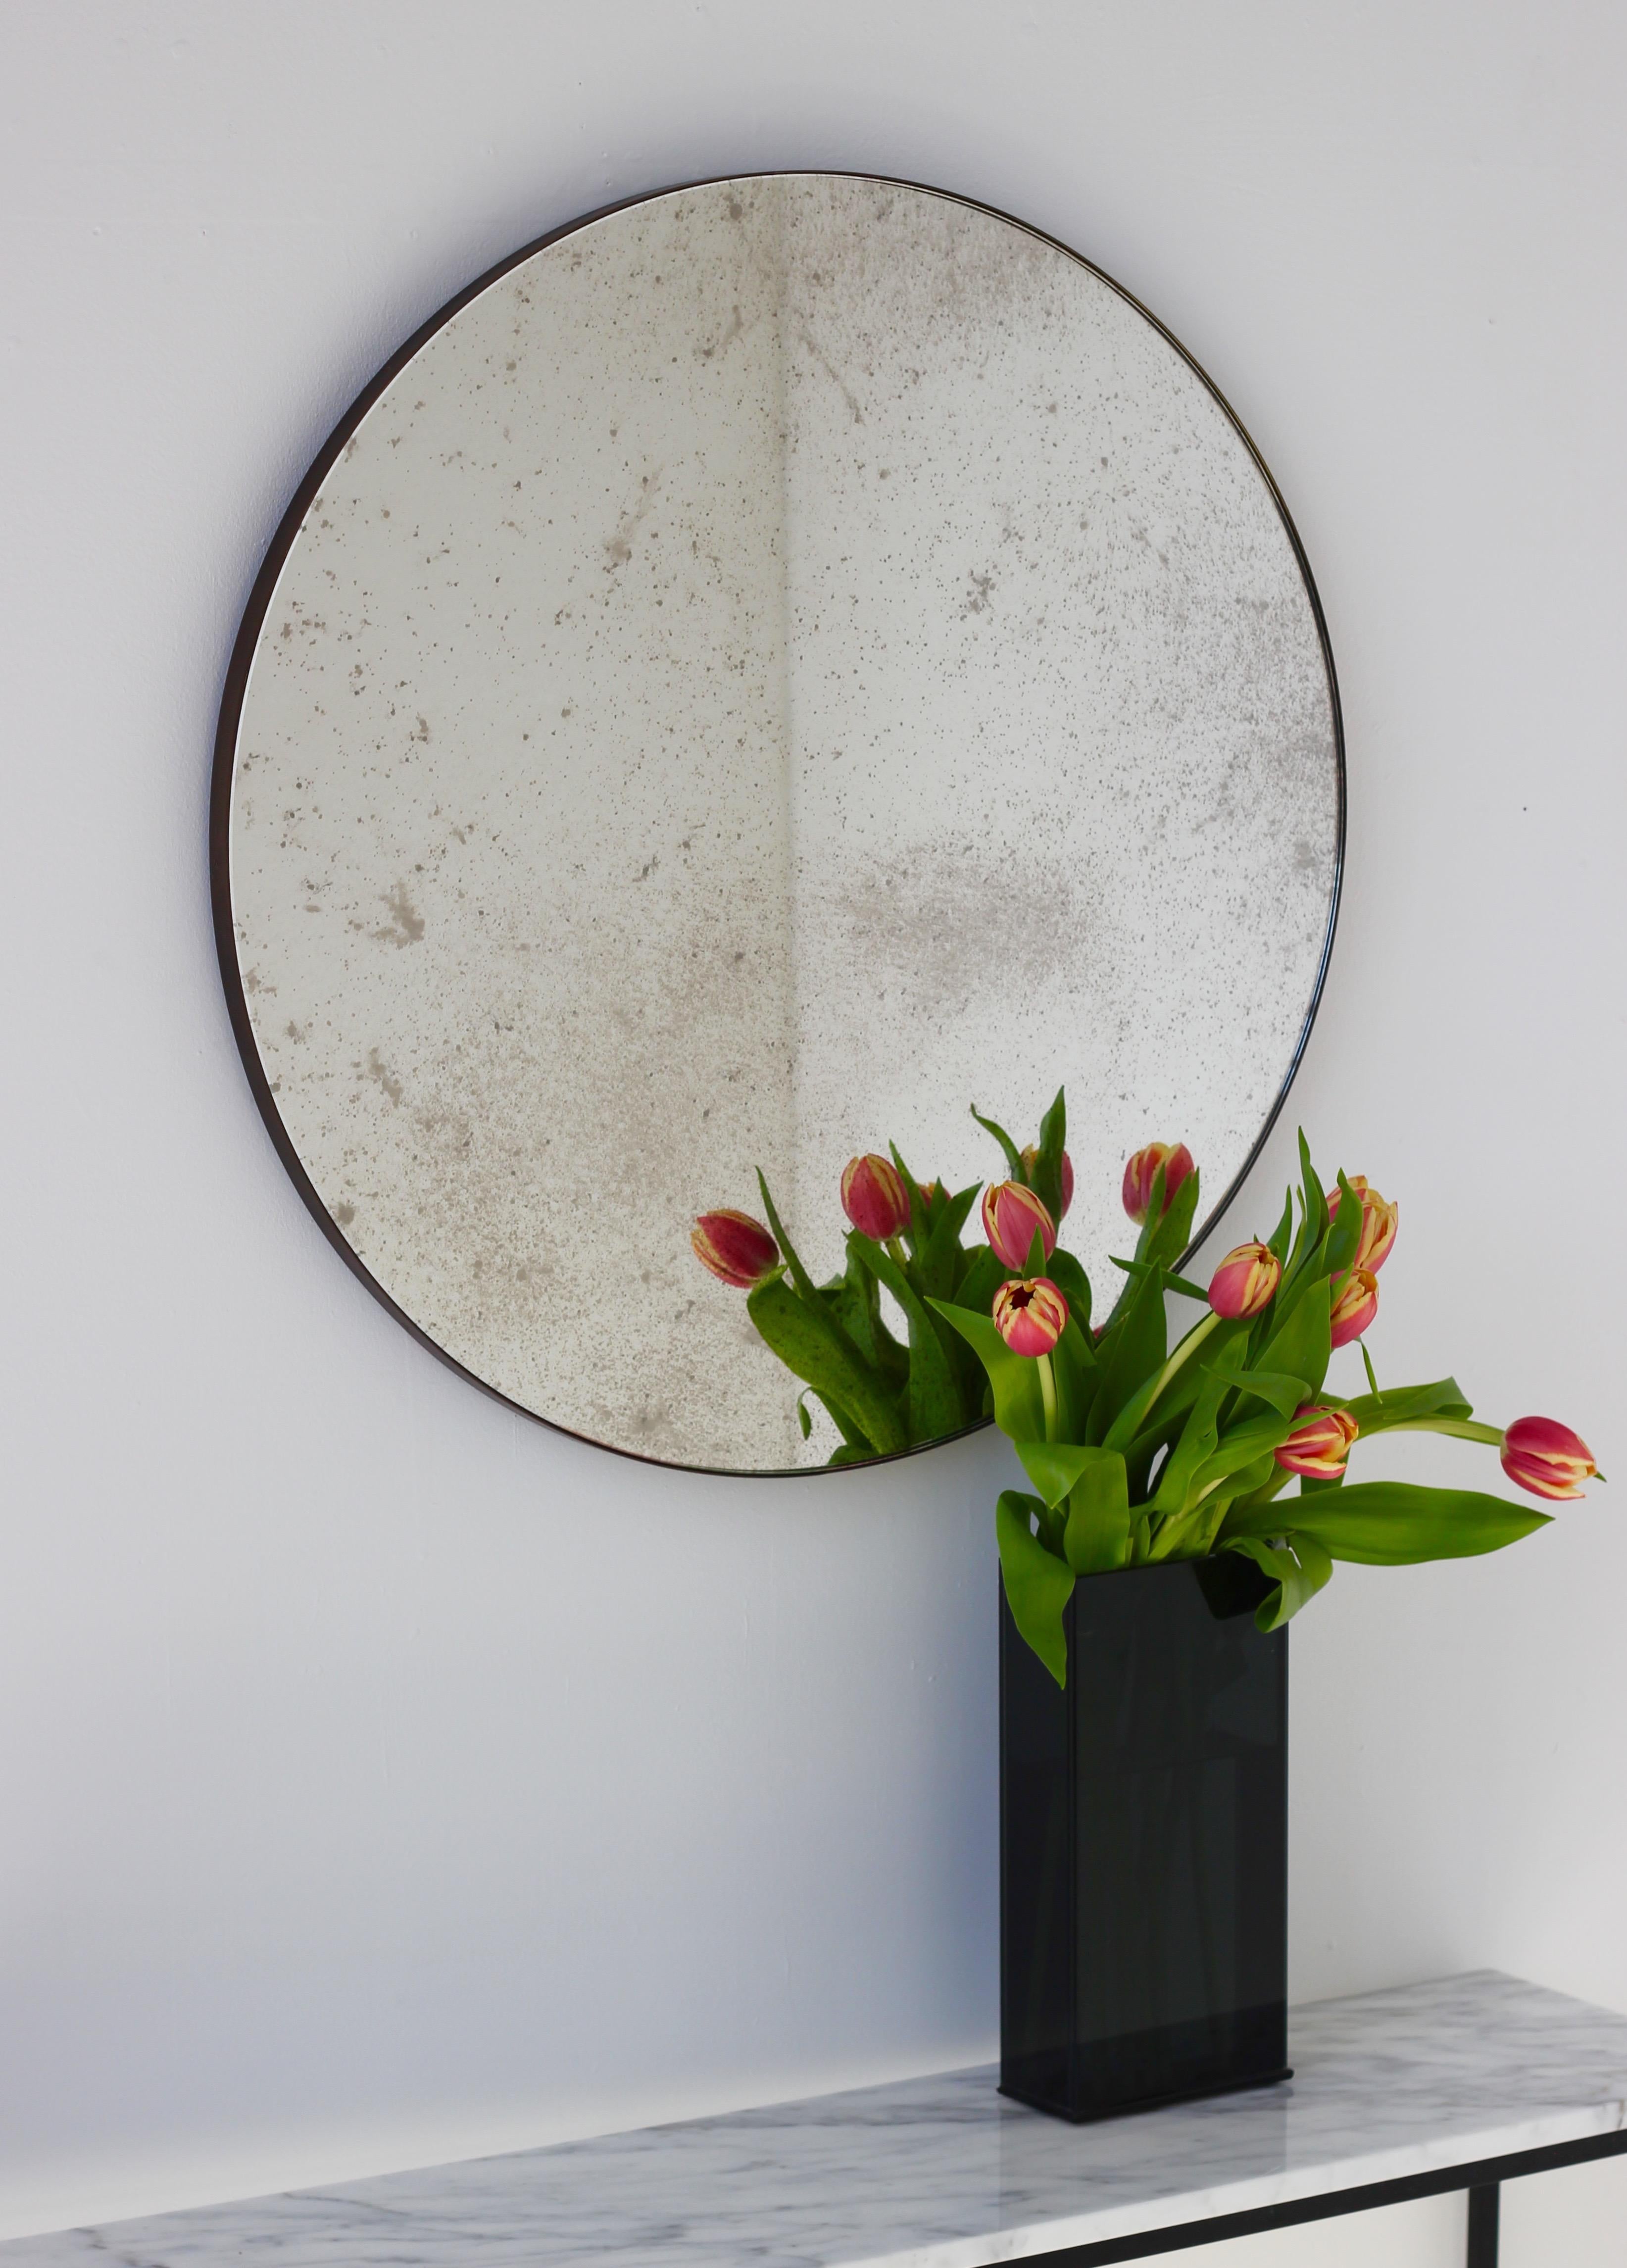 Schöner runder Orbis™-Spiegel in antikem Design mit einem minimalistischen Messingrahmen mit Bronzepatina. Entworfen und handgefertigt in London, UK.

Die mittelgroßen, großen und extragroßen Spiegel (60, 80 und 100 cm) sind mit einem ausgeklügelten